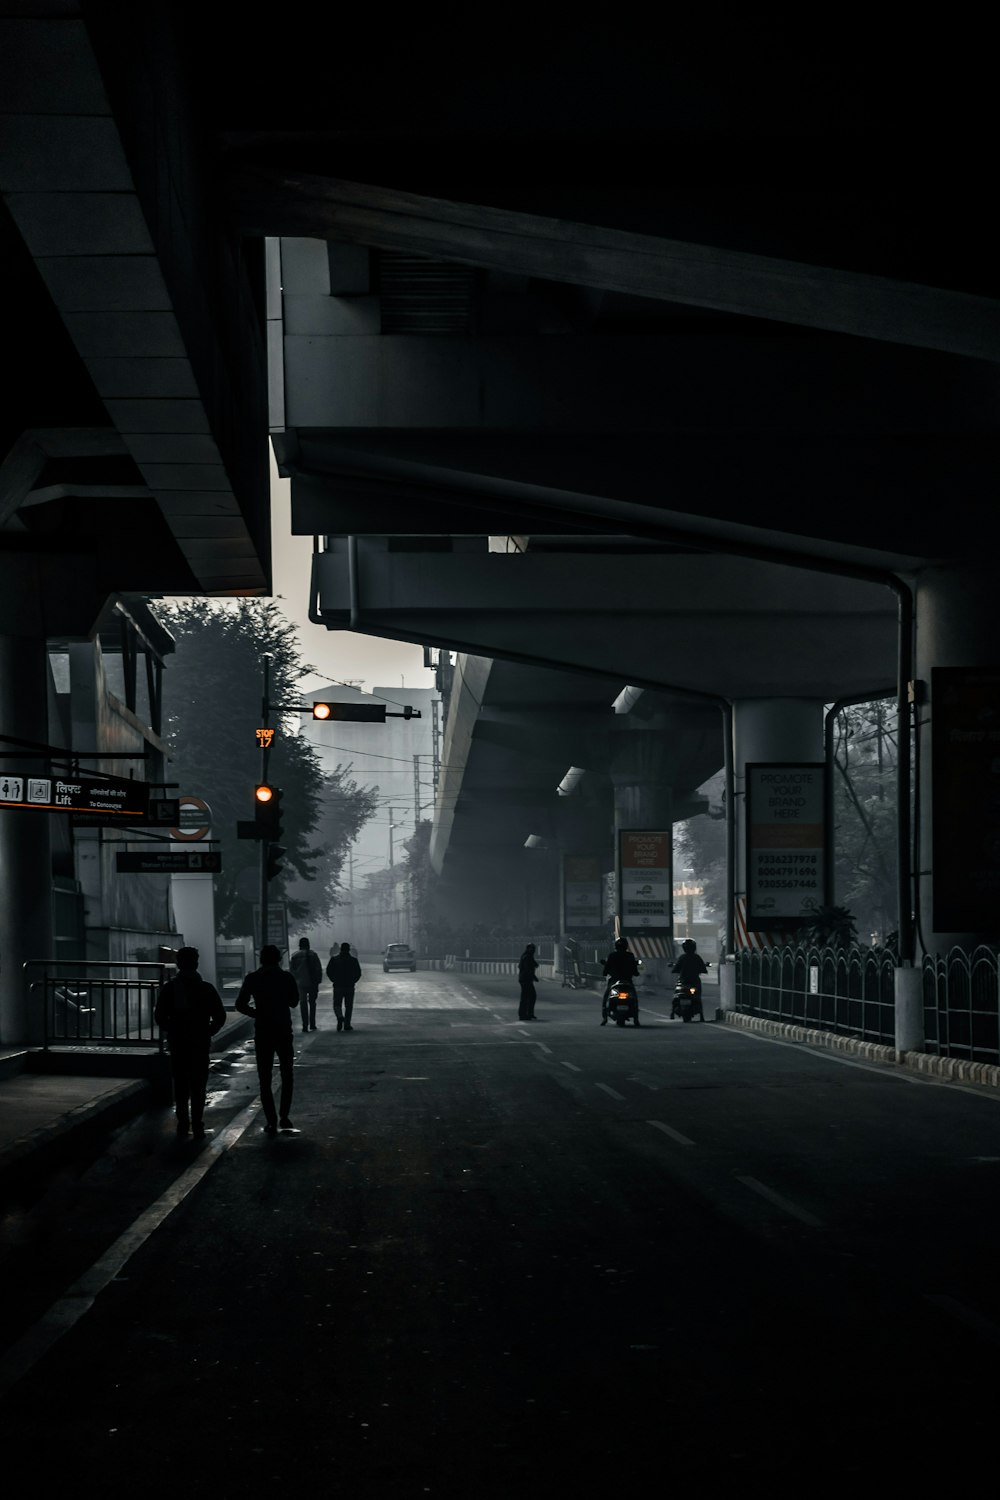 personnes marchant sur le trottoir pendant la nuit